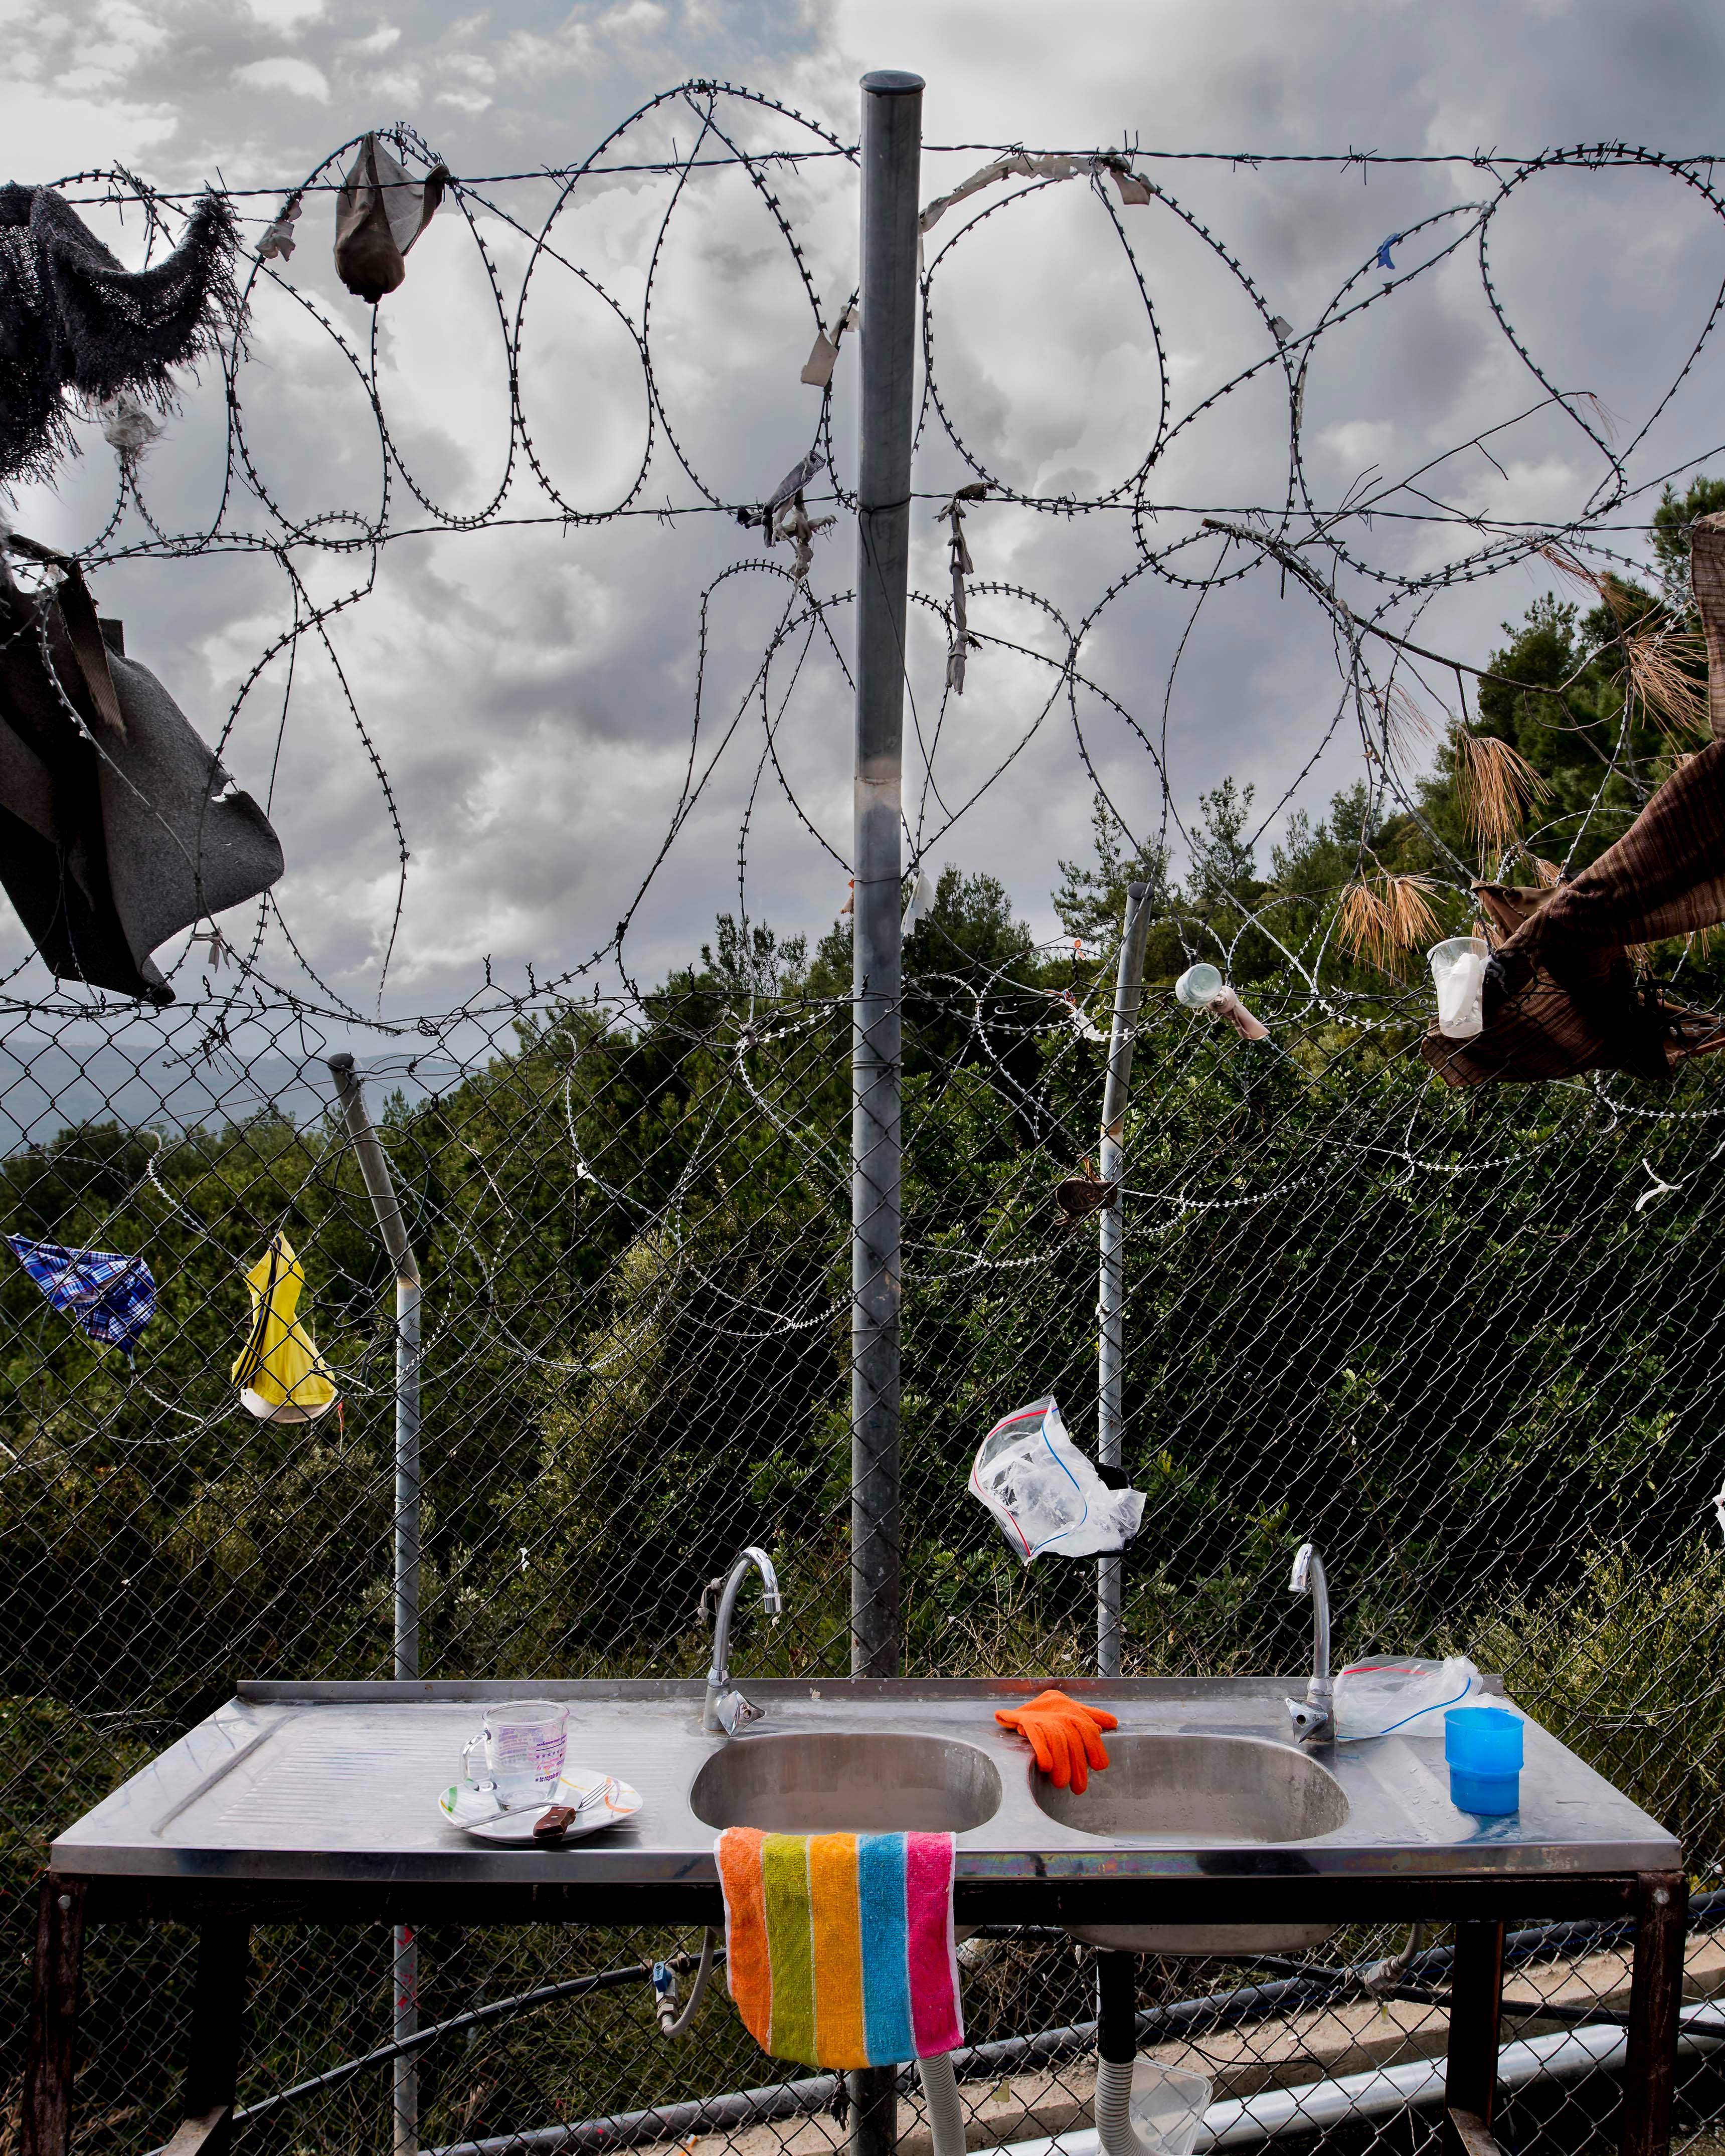 Un an aux côtés des migrants vu par l'artiste photographe Bruno Fert